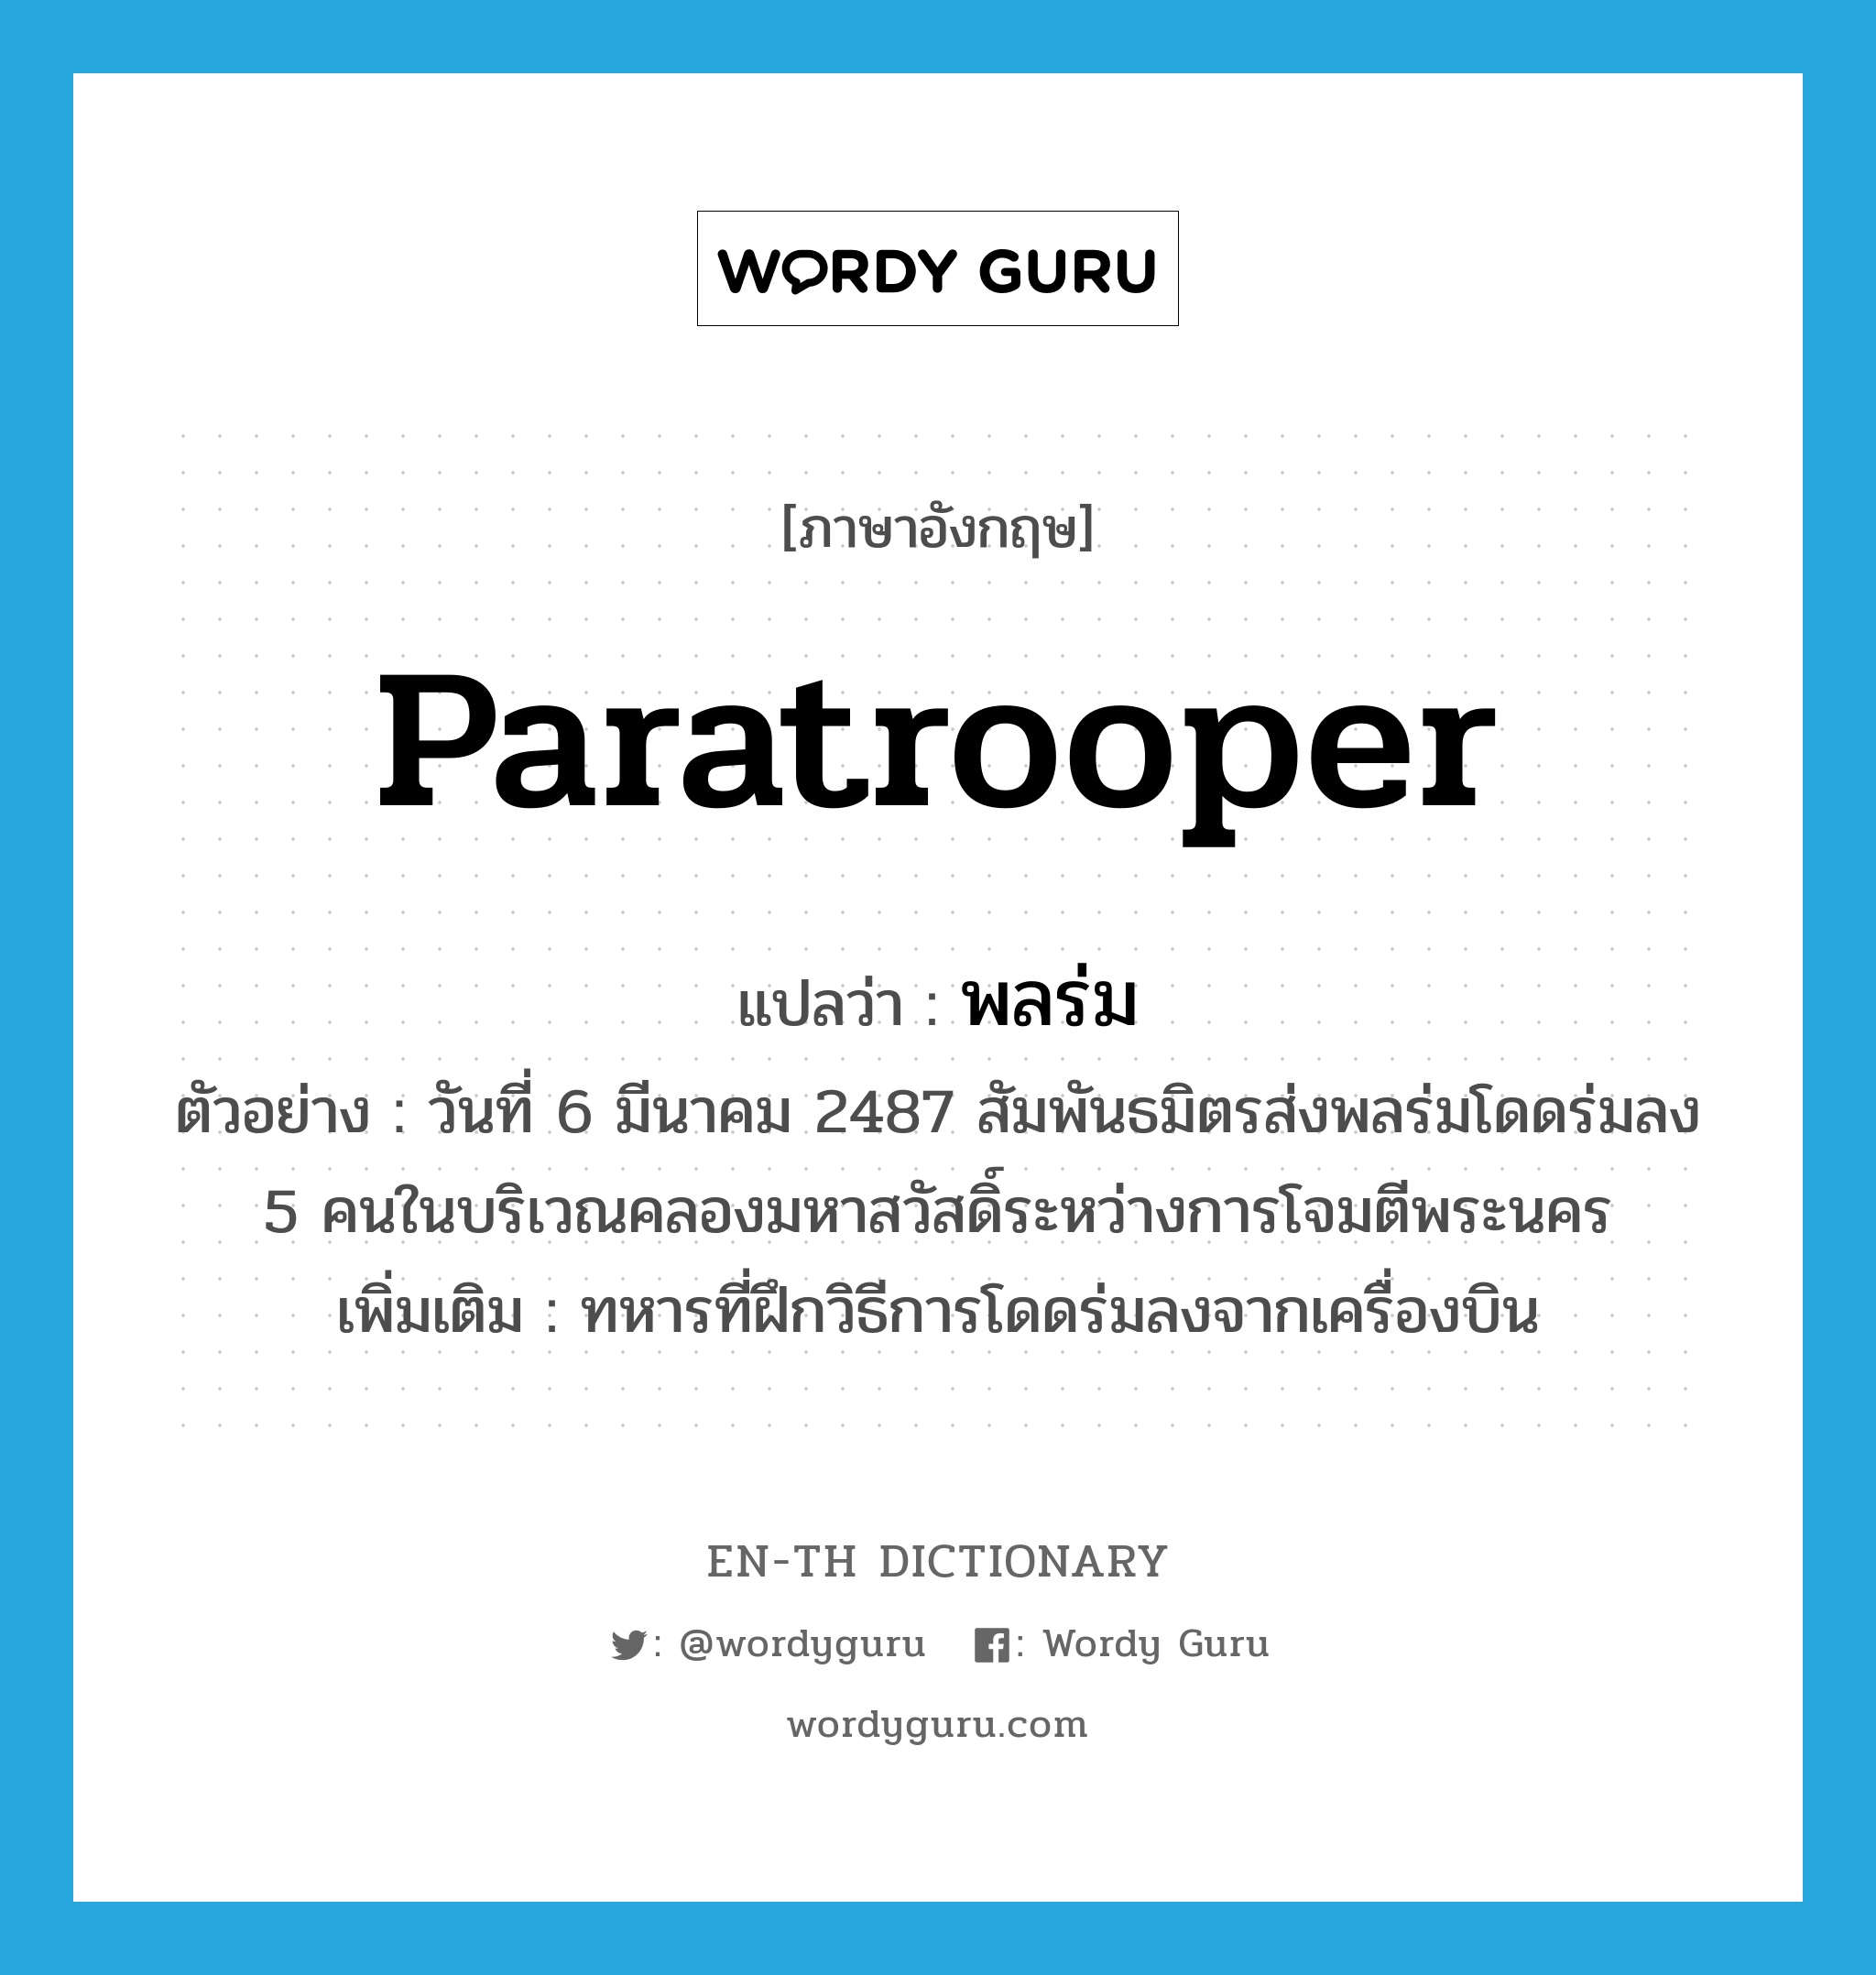 paratrooper แปลว่า?, คำศัพท์ภาษาอังกฤษ paratrooper แปลว่า พลร่ม ประเภท N ตัวอย่าง วันที่ 6 มีนาคม 2487 สัมพันธมิตรส่งพลร่มโดดร่มลง 5 คนในบริเวณคลองมหาสวัสดิ์ระหว่างการโจมตีพระนคร เพิ่มเติม ทหารที่ฝึกวิธีการโดดร่มลงจากเครื่องบิน หมวด N